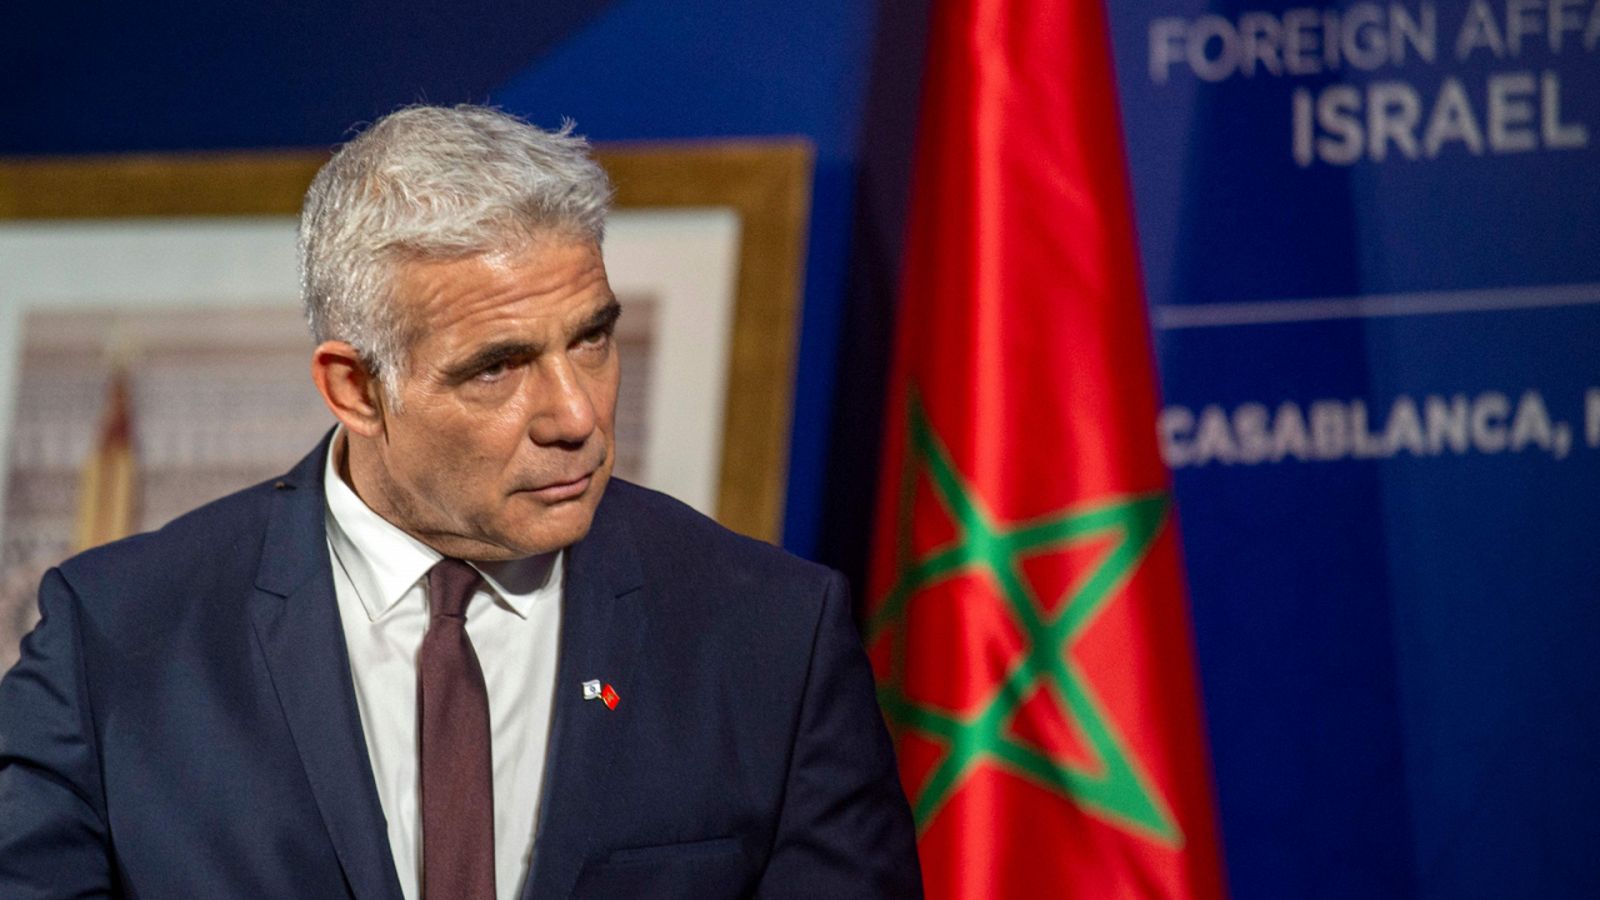 Cinco continentes - Israel y Marruecos sellan su relación - Escuchar ahora